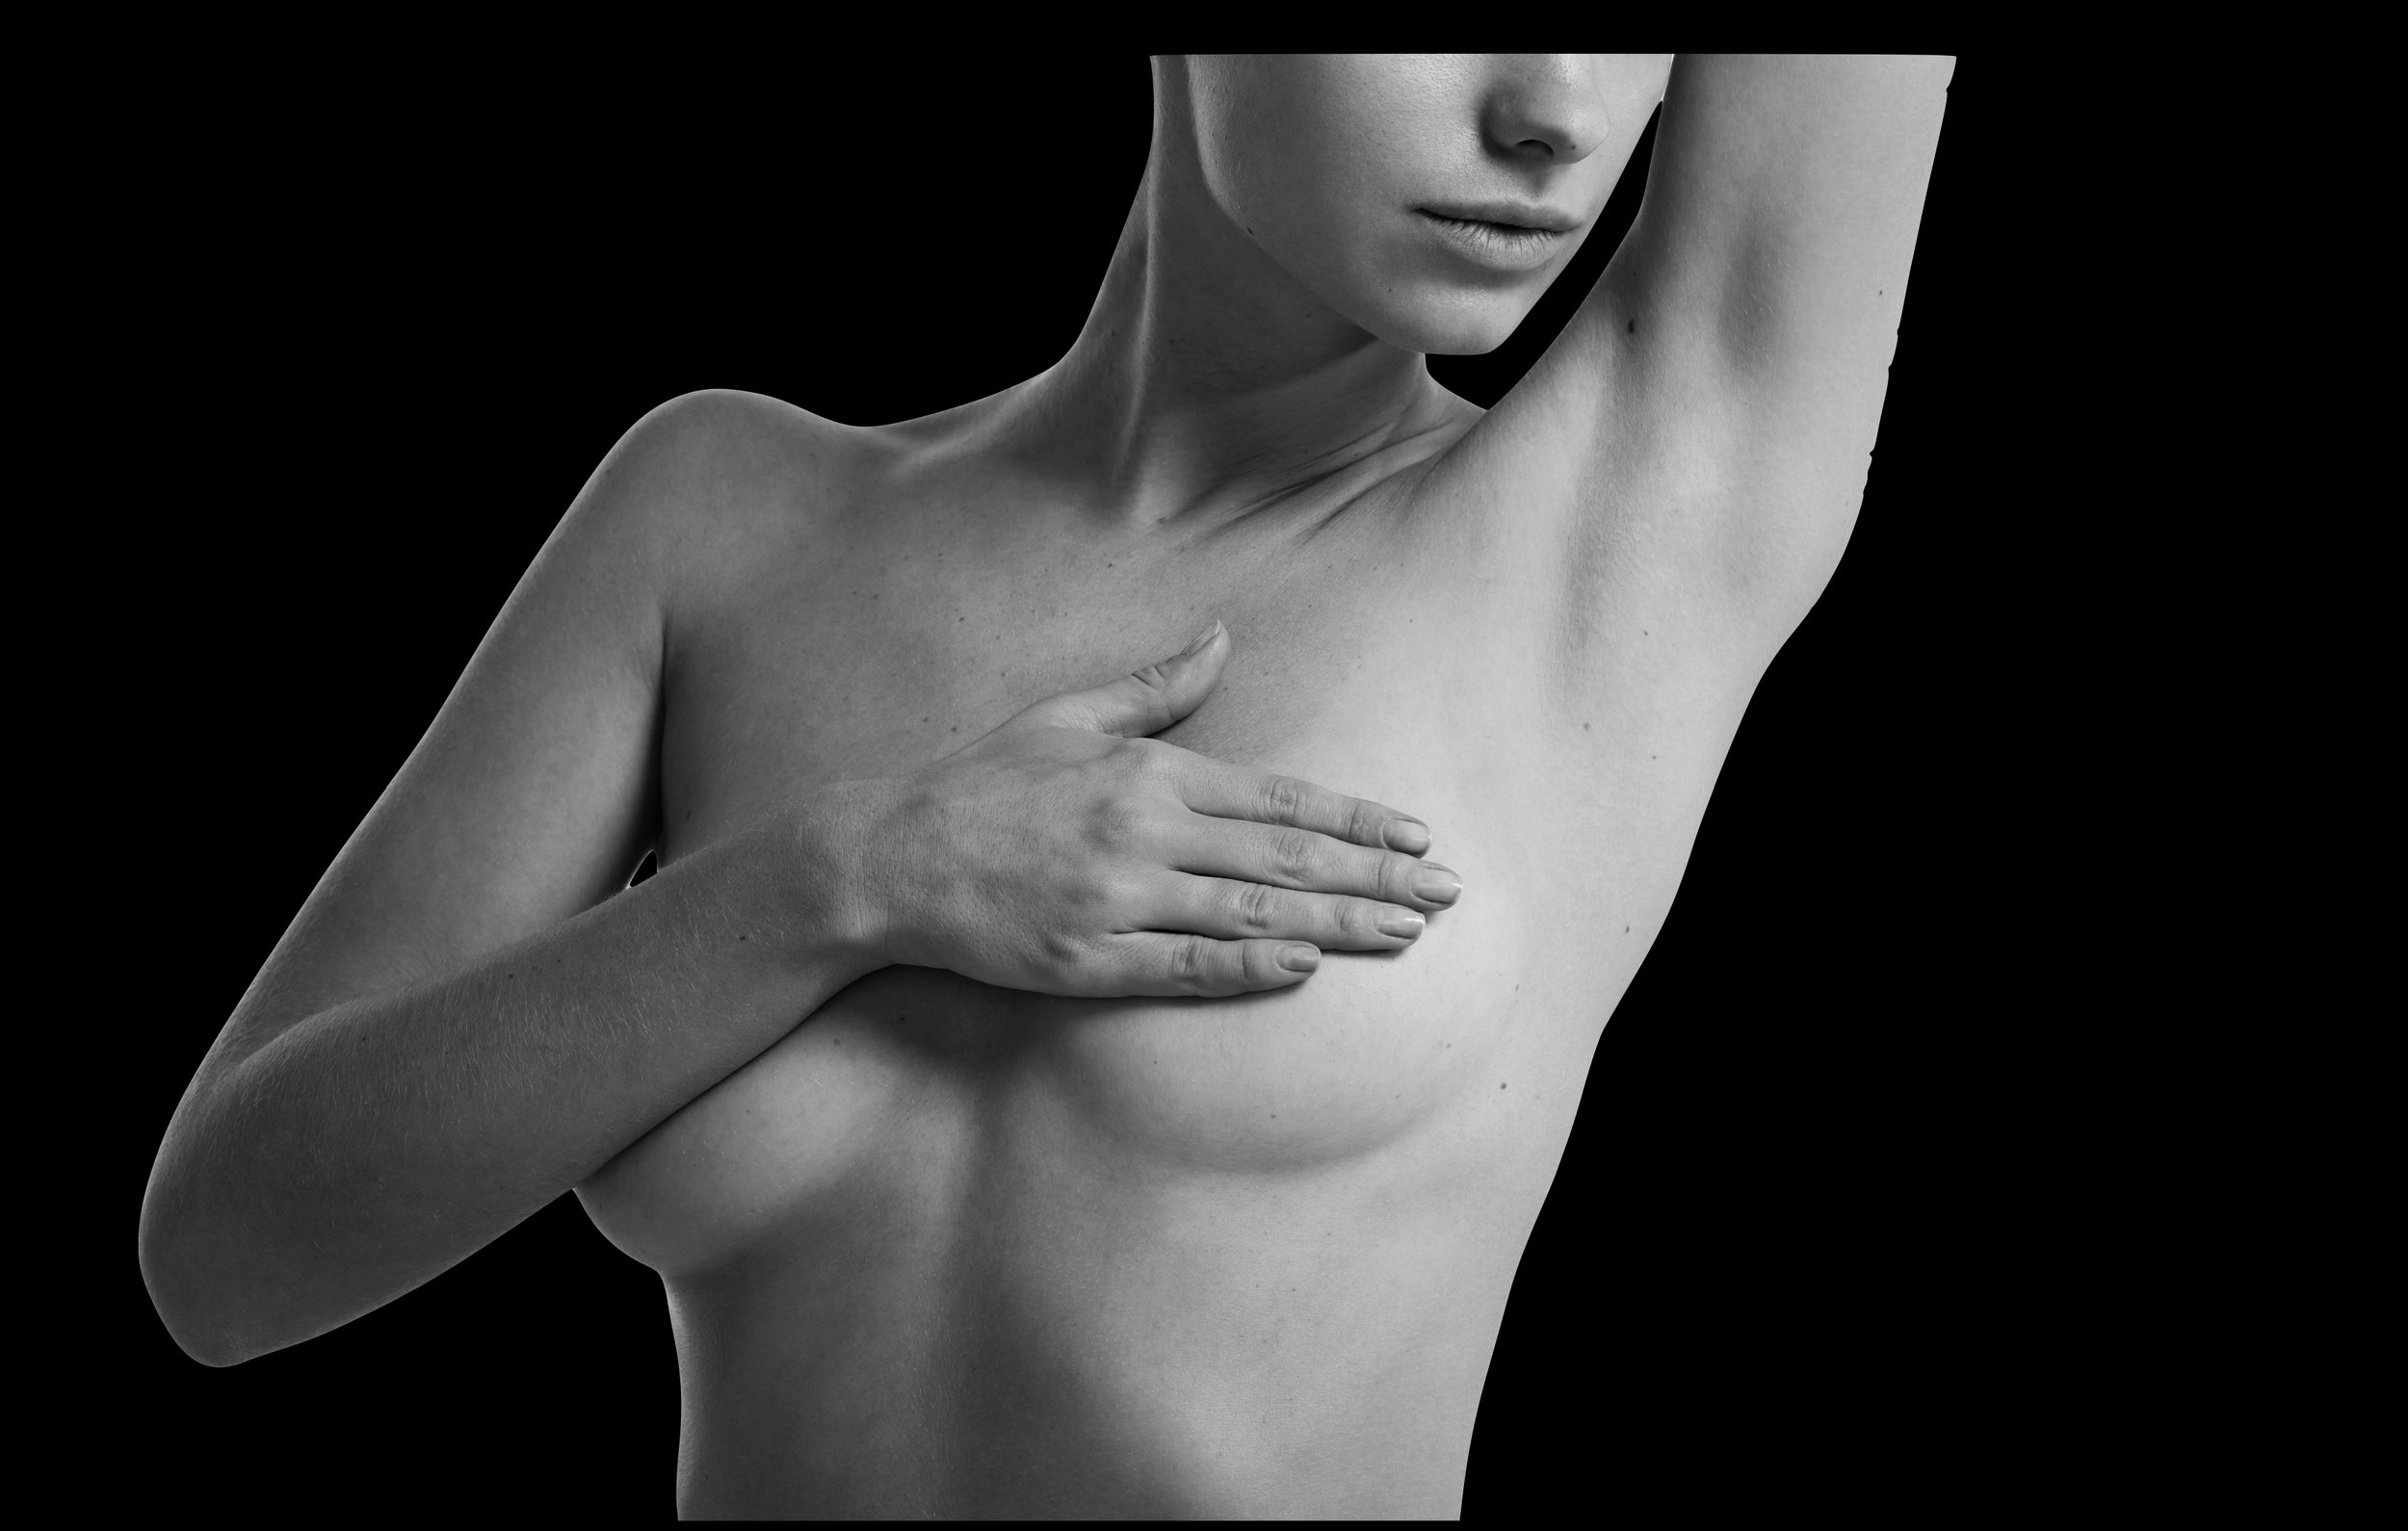 Totale borstreconstructie door Dr Karl Waked na mastectomie met behulp van een borstimplantaat, lipofilling of een vrije flap